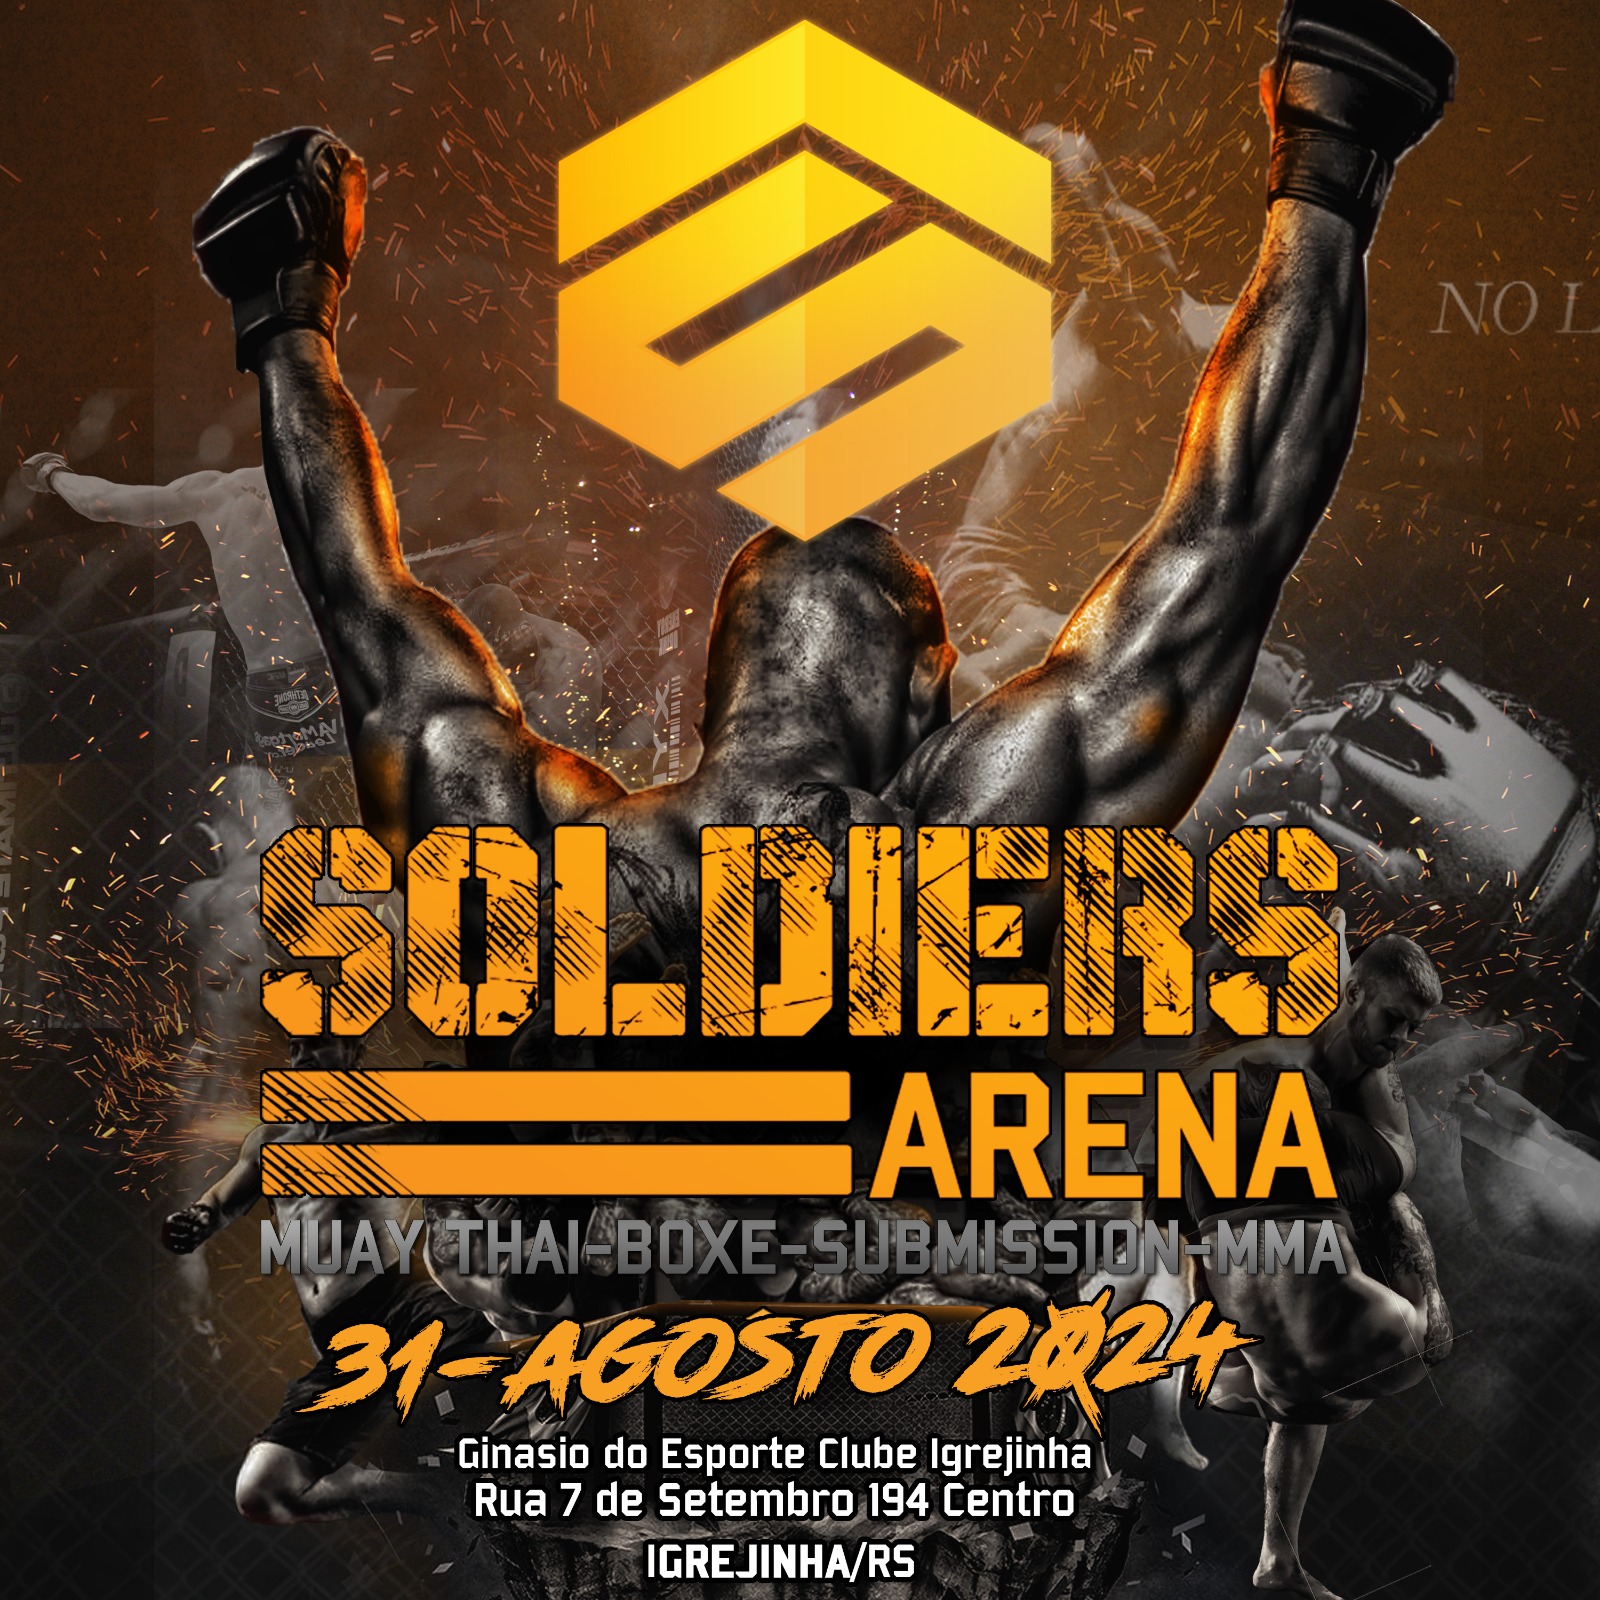 Soldiers Arena será no dia 31 de agosto em Igrejinha-RS. (Imagem: Divulgação/Soldiers)